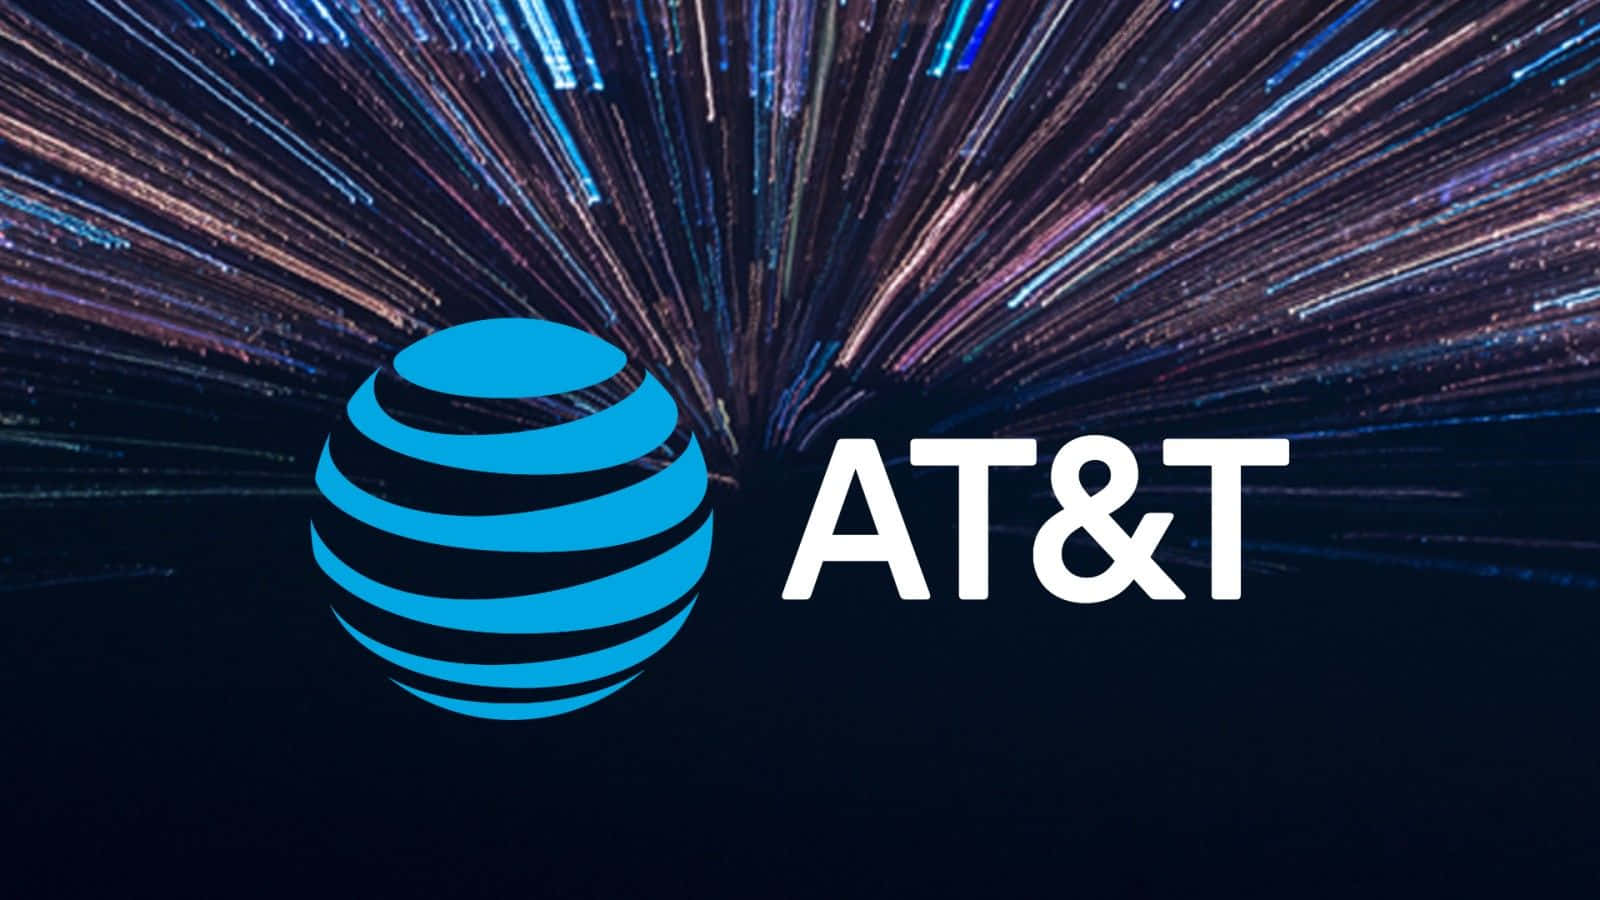 Logoet for AT&T på en blå baggrund. Wallpaper